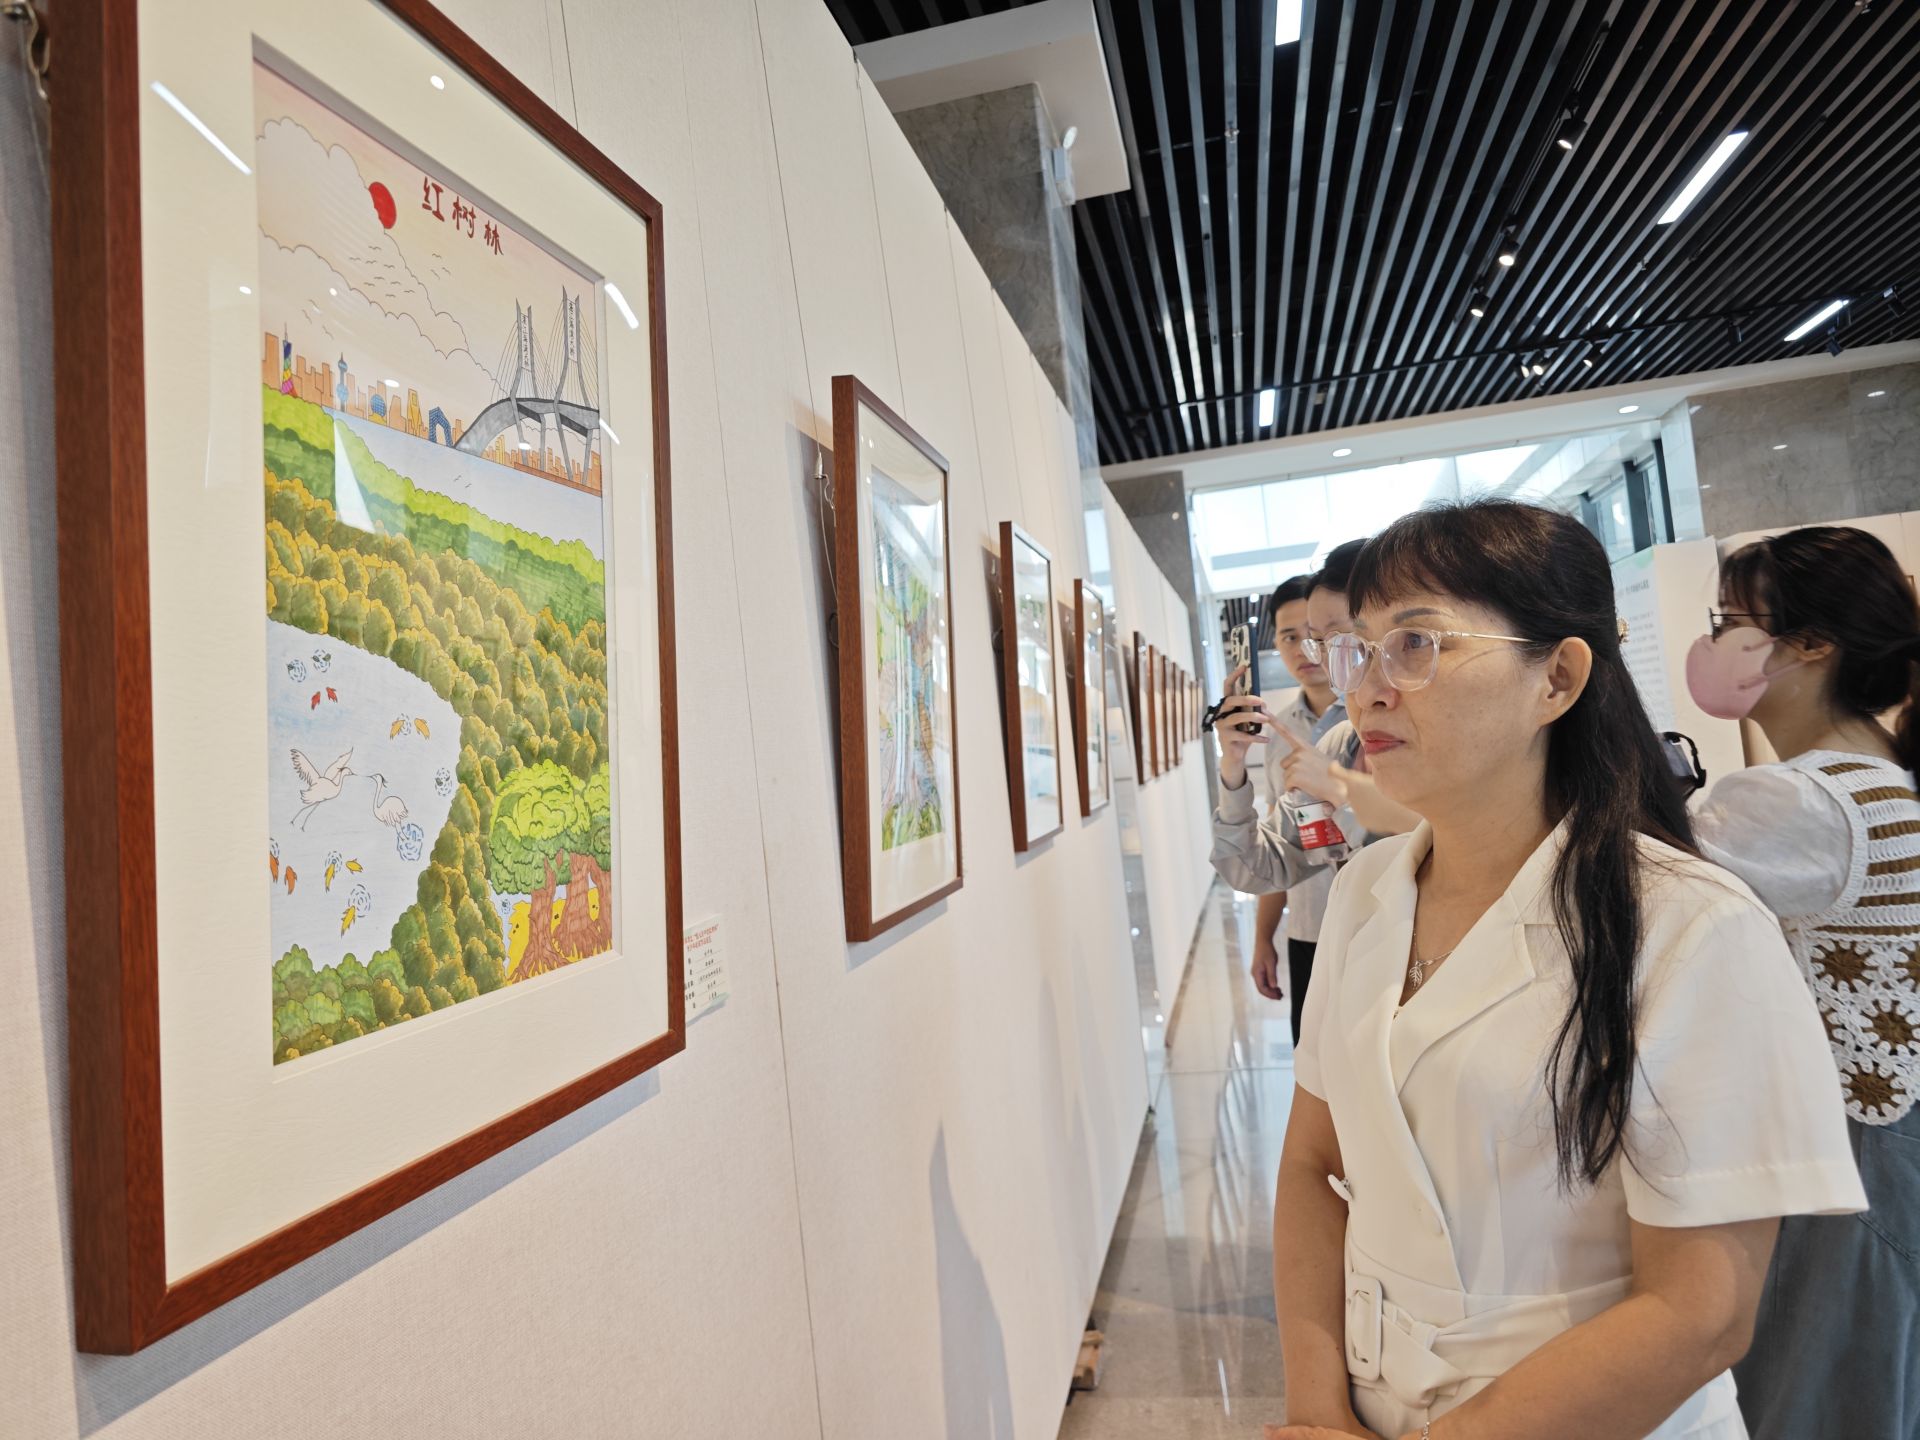 麻章区举办“我心目中的红树林”青少年绘画作品展览